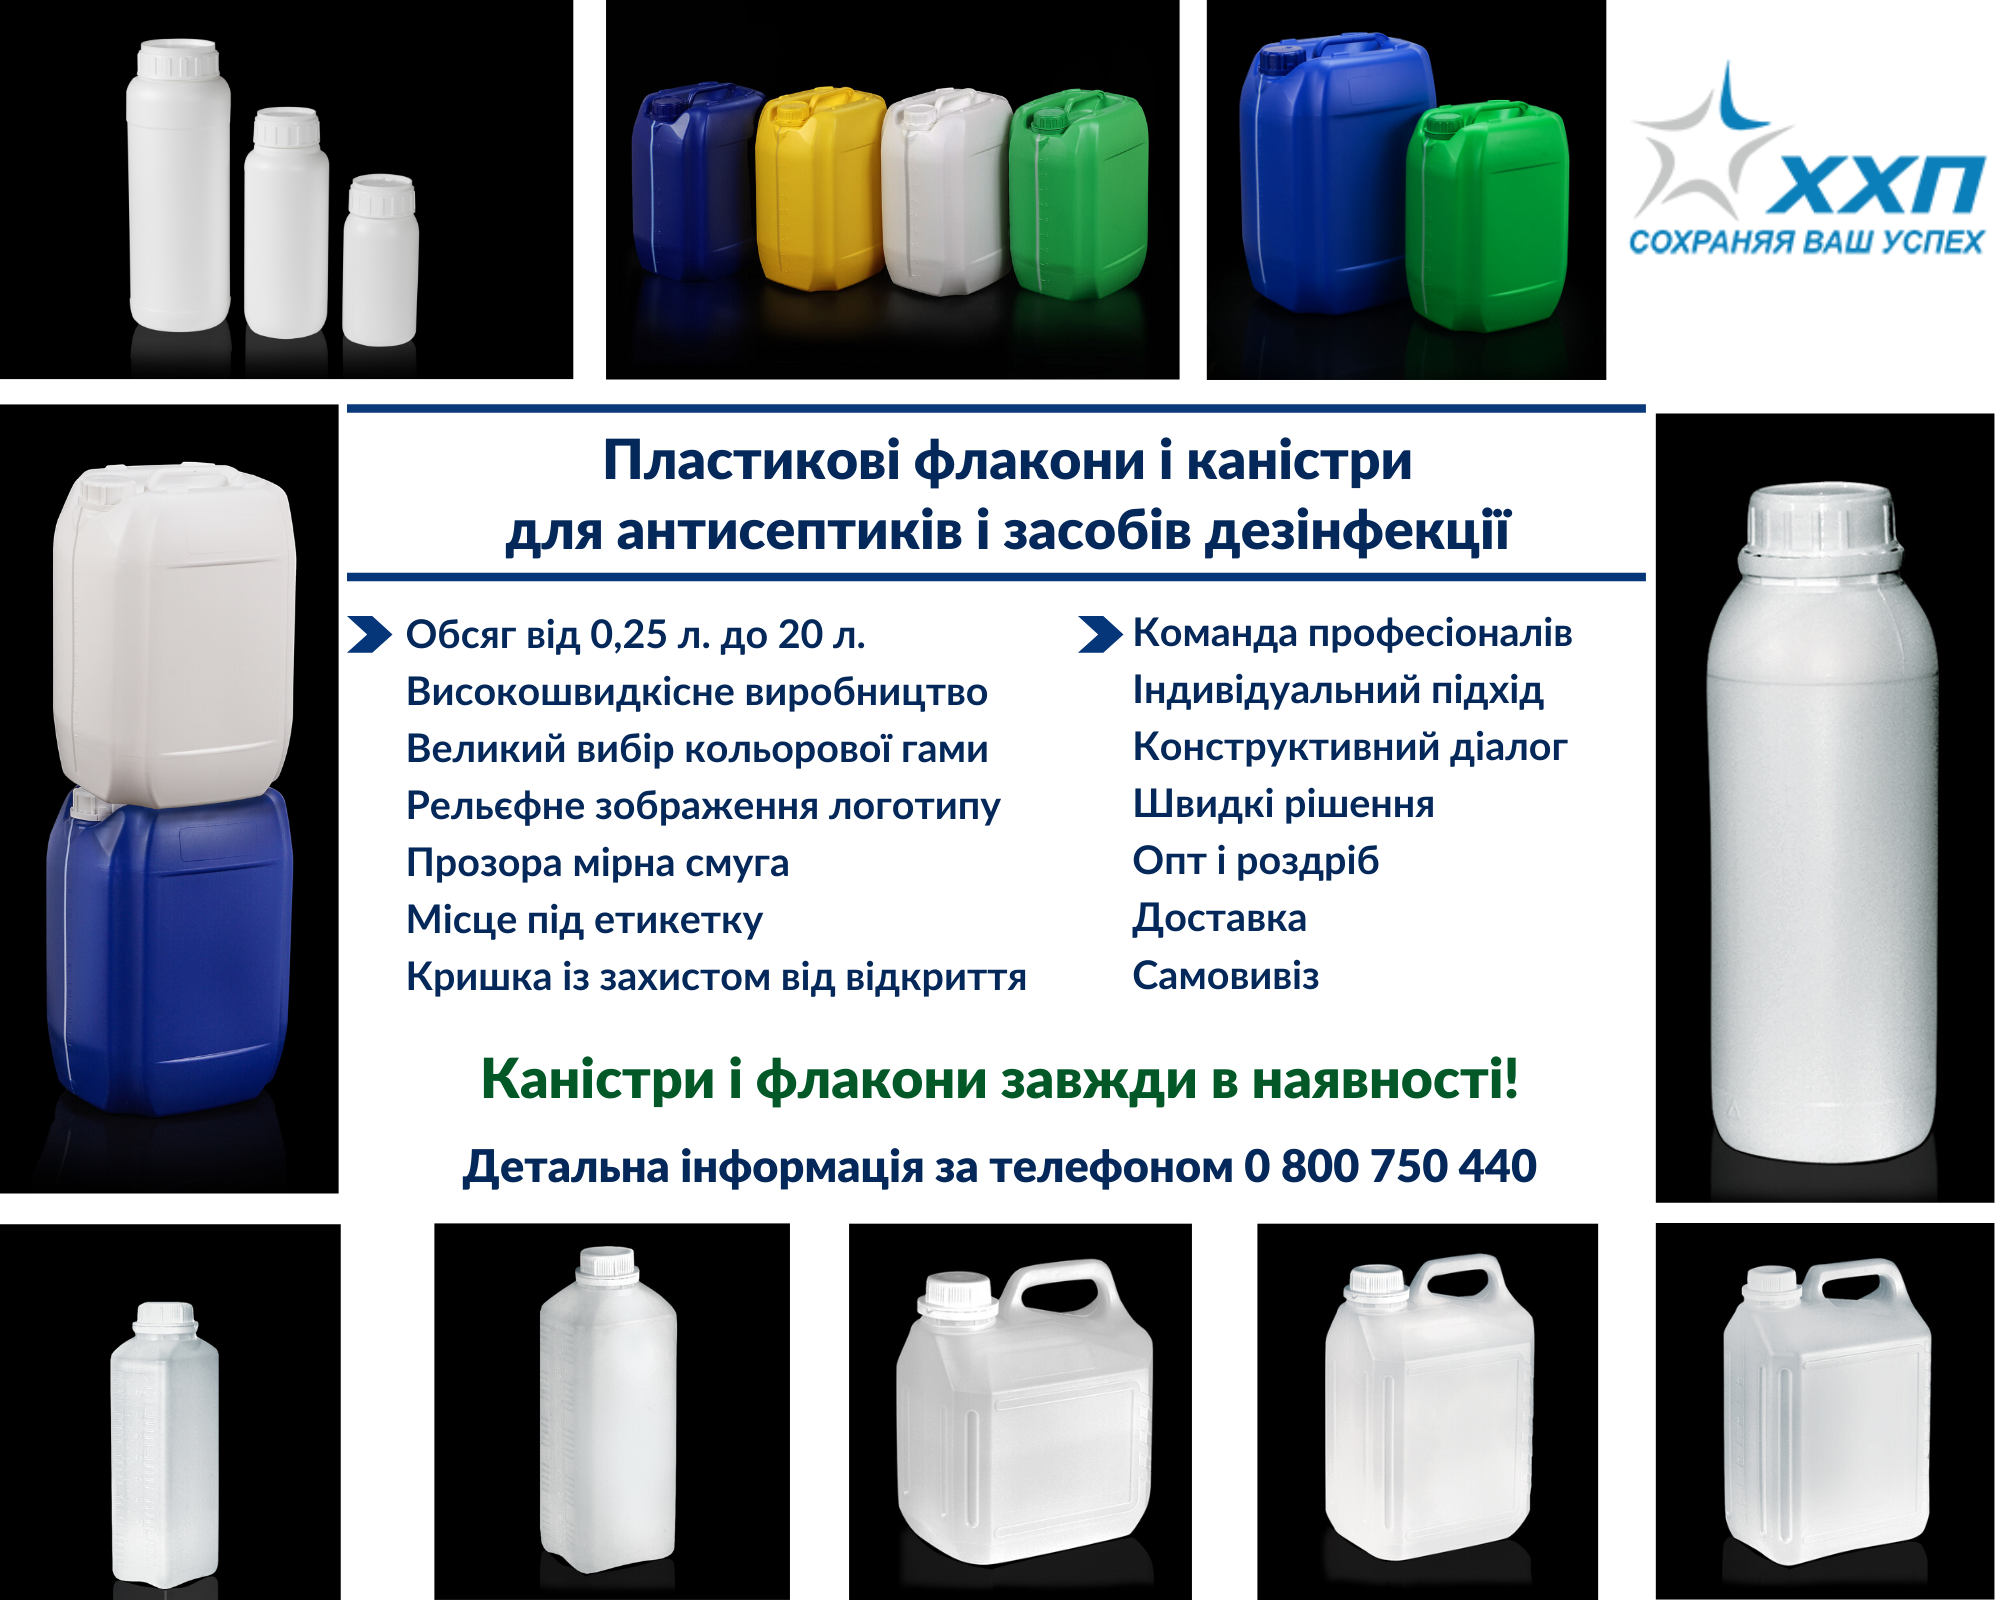 Пластикові флакони і каністри для антисептиків і засобів дезінфекції